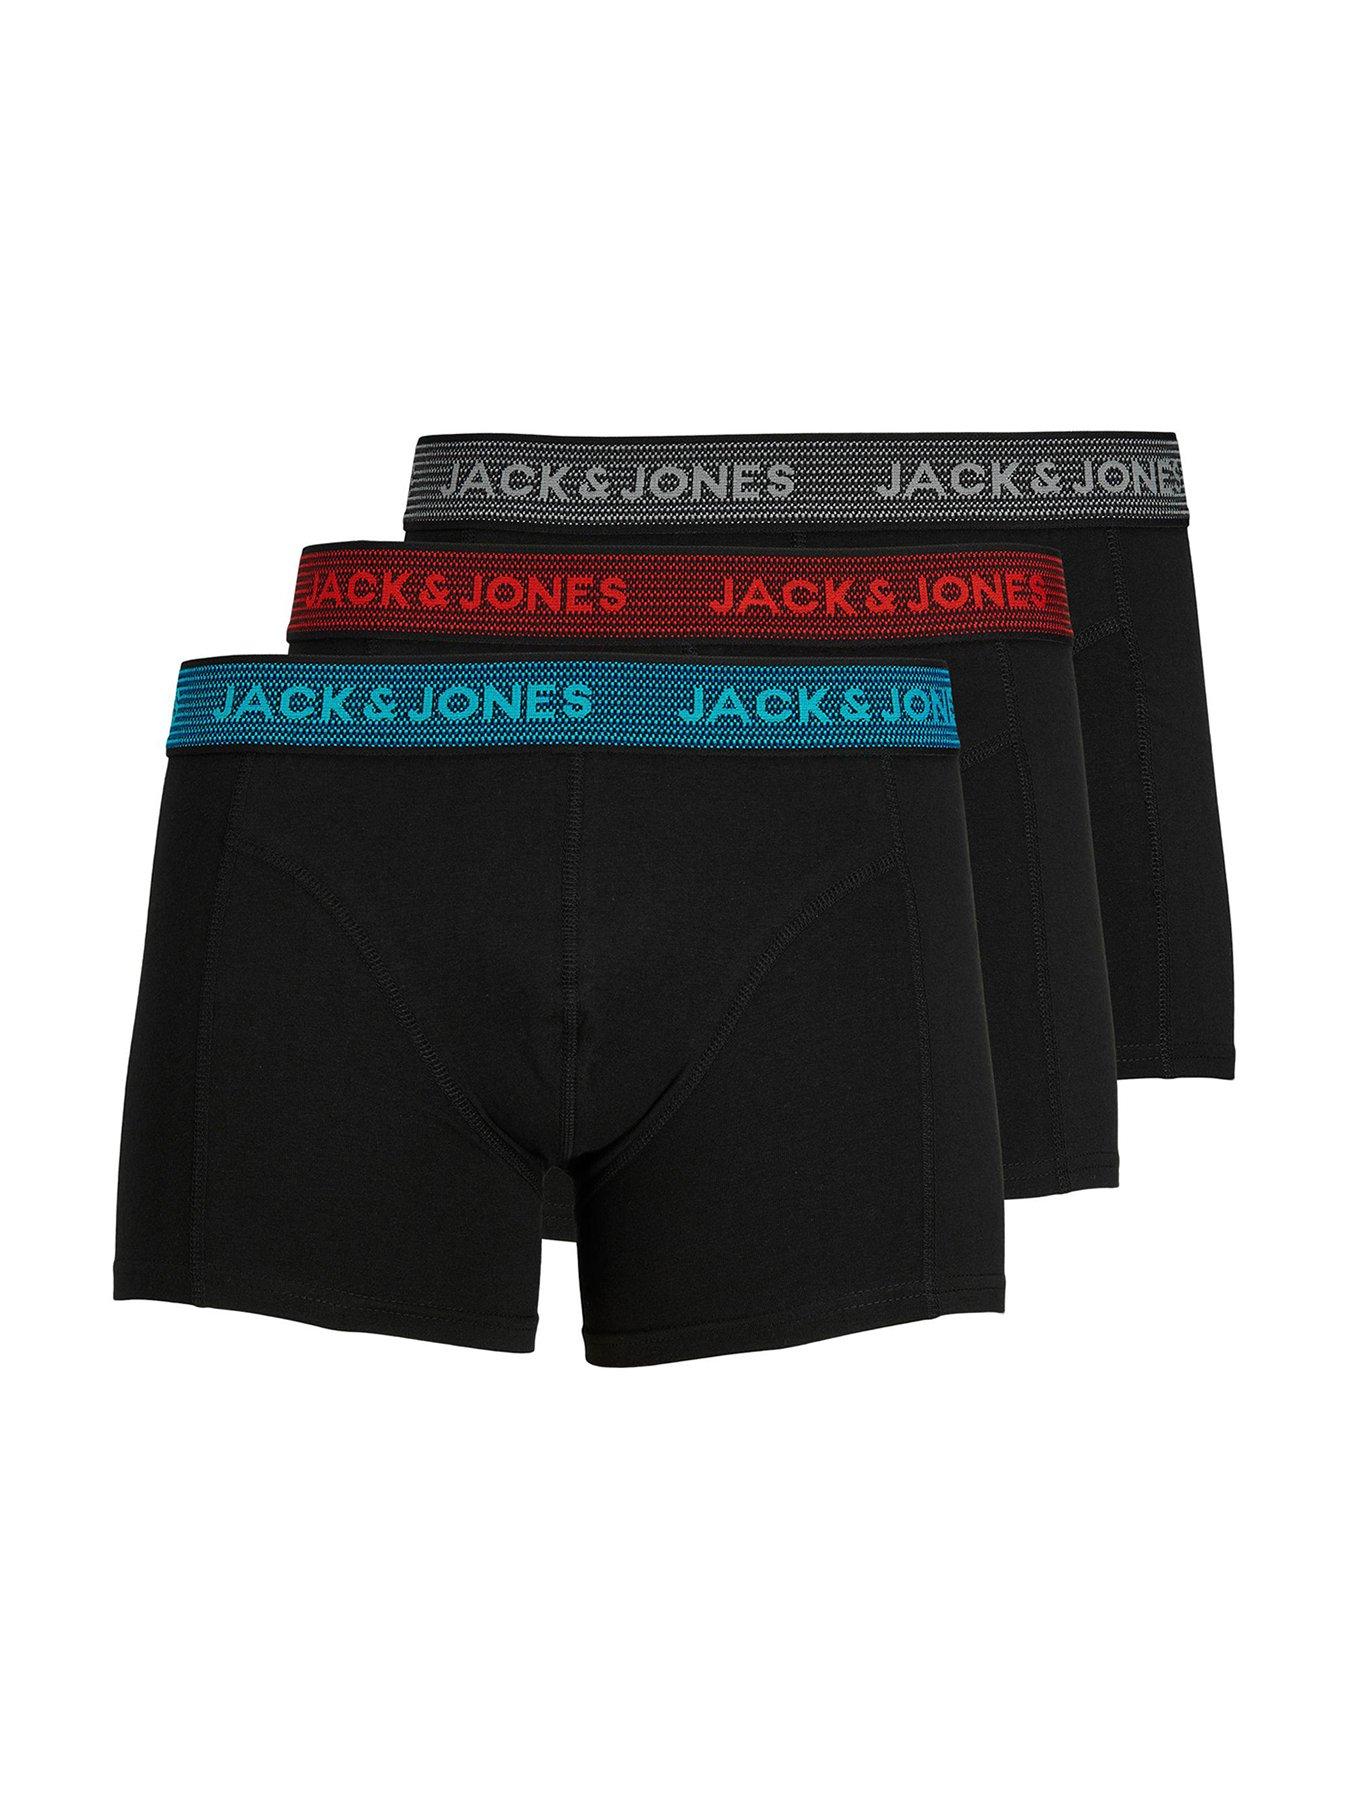 Jack & Jones 3-Pack Logo Waistband Trunks - Black